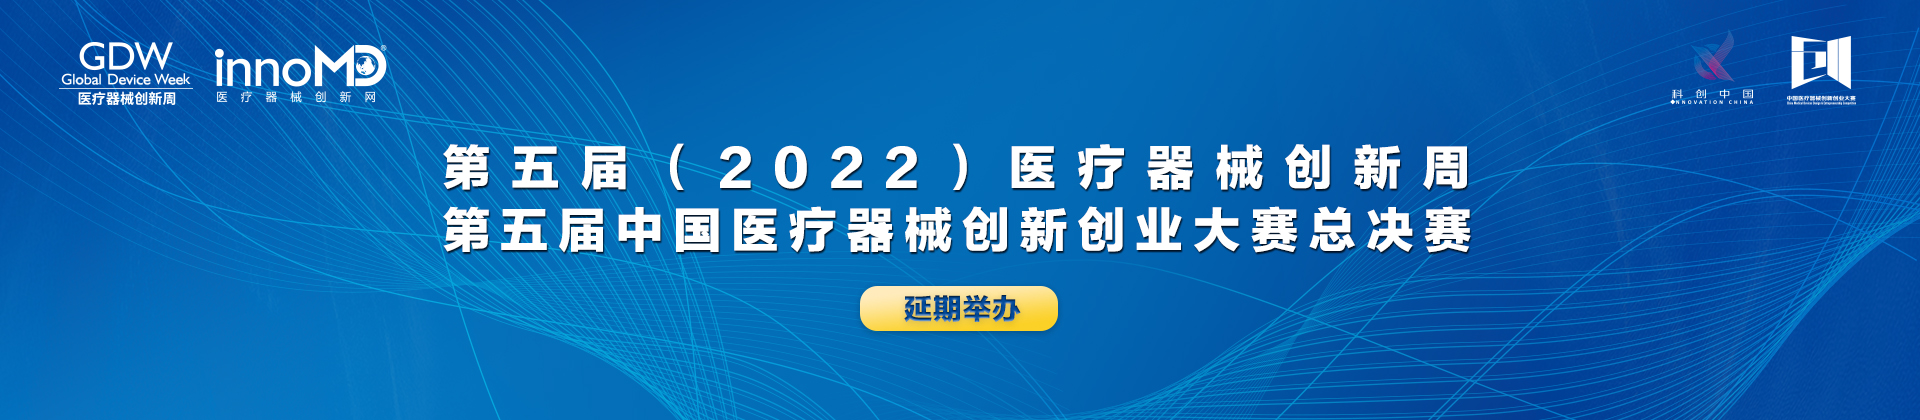 中国医疗器械创新创业大赛暨医疗器械创新周延期举办